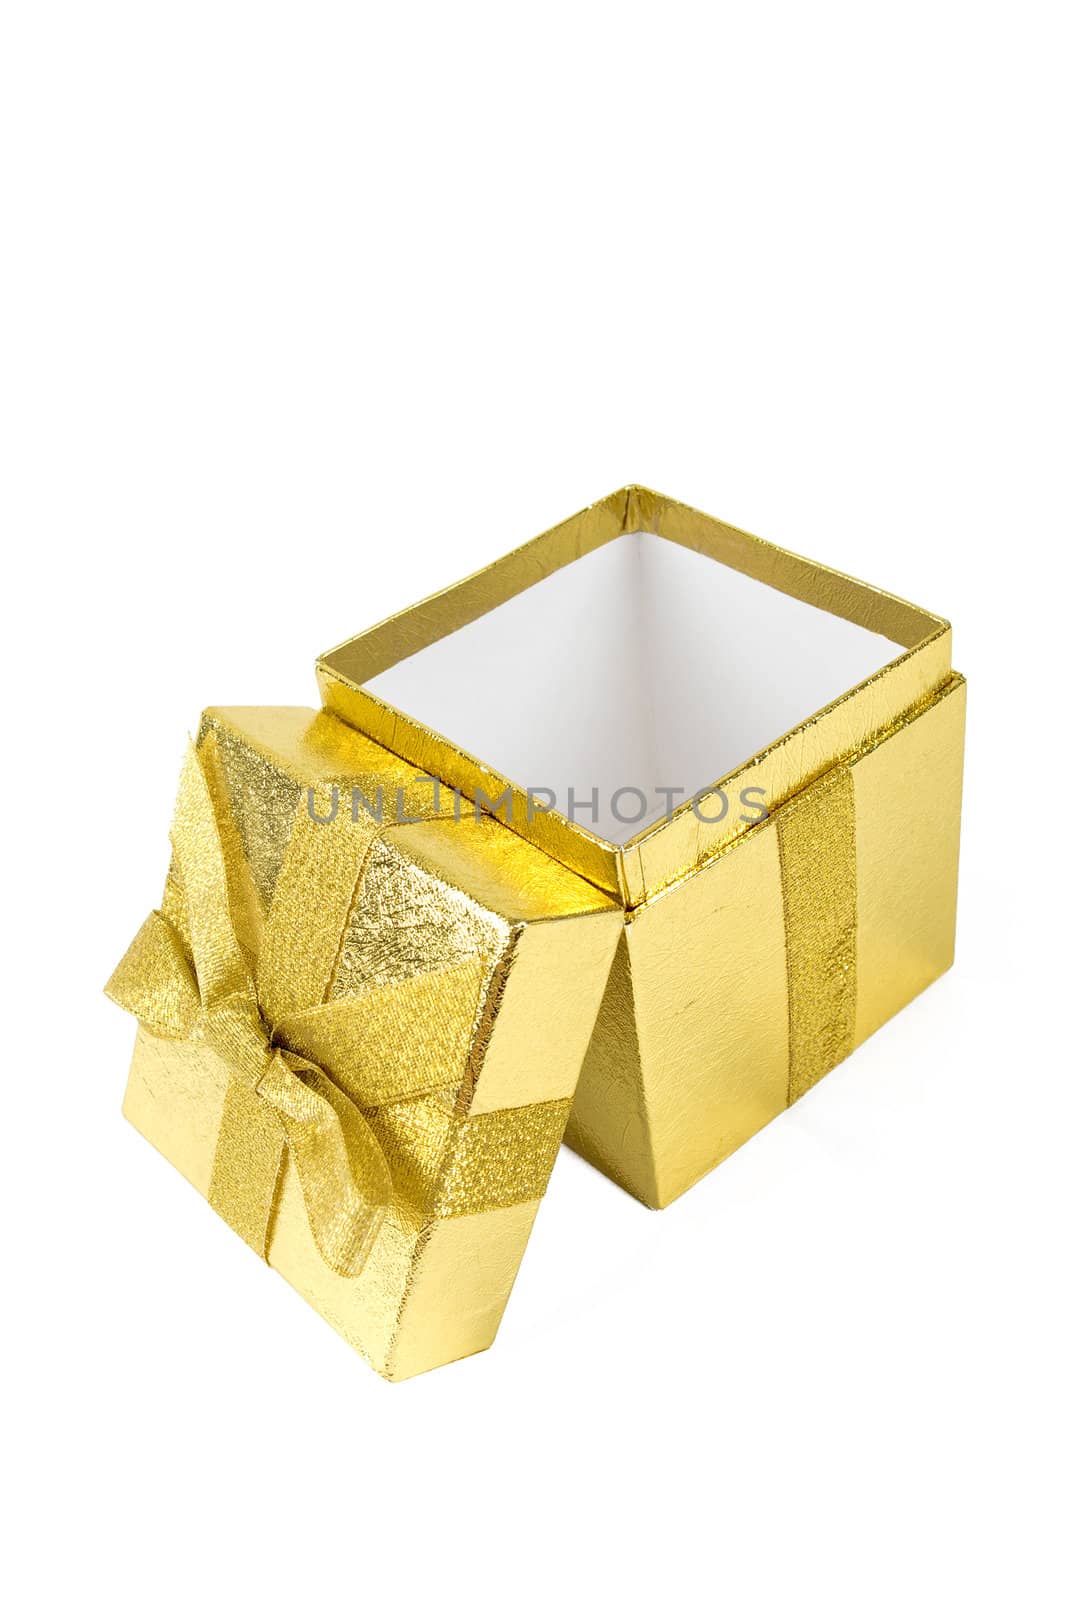 Opened golden shining gift box isolated on white.